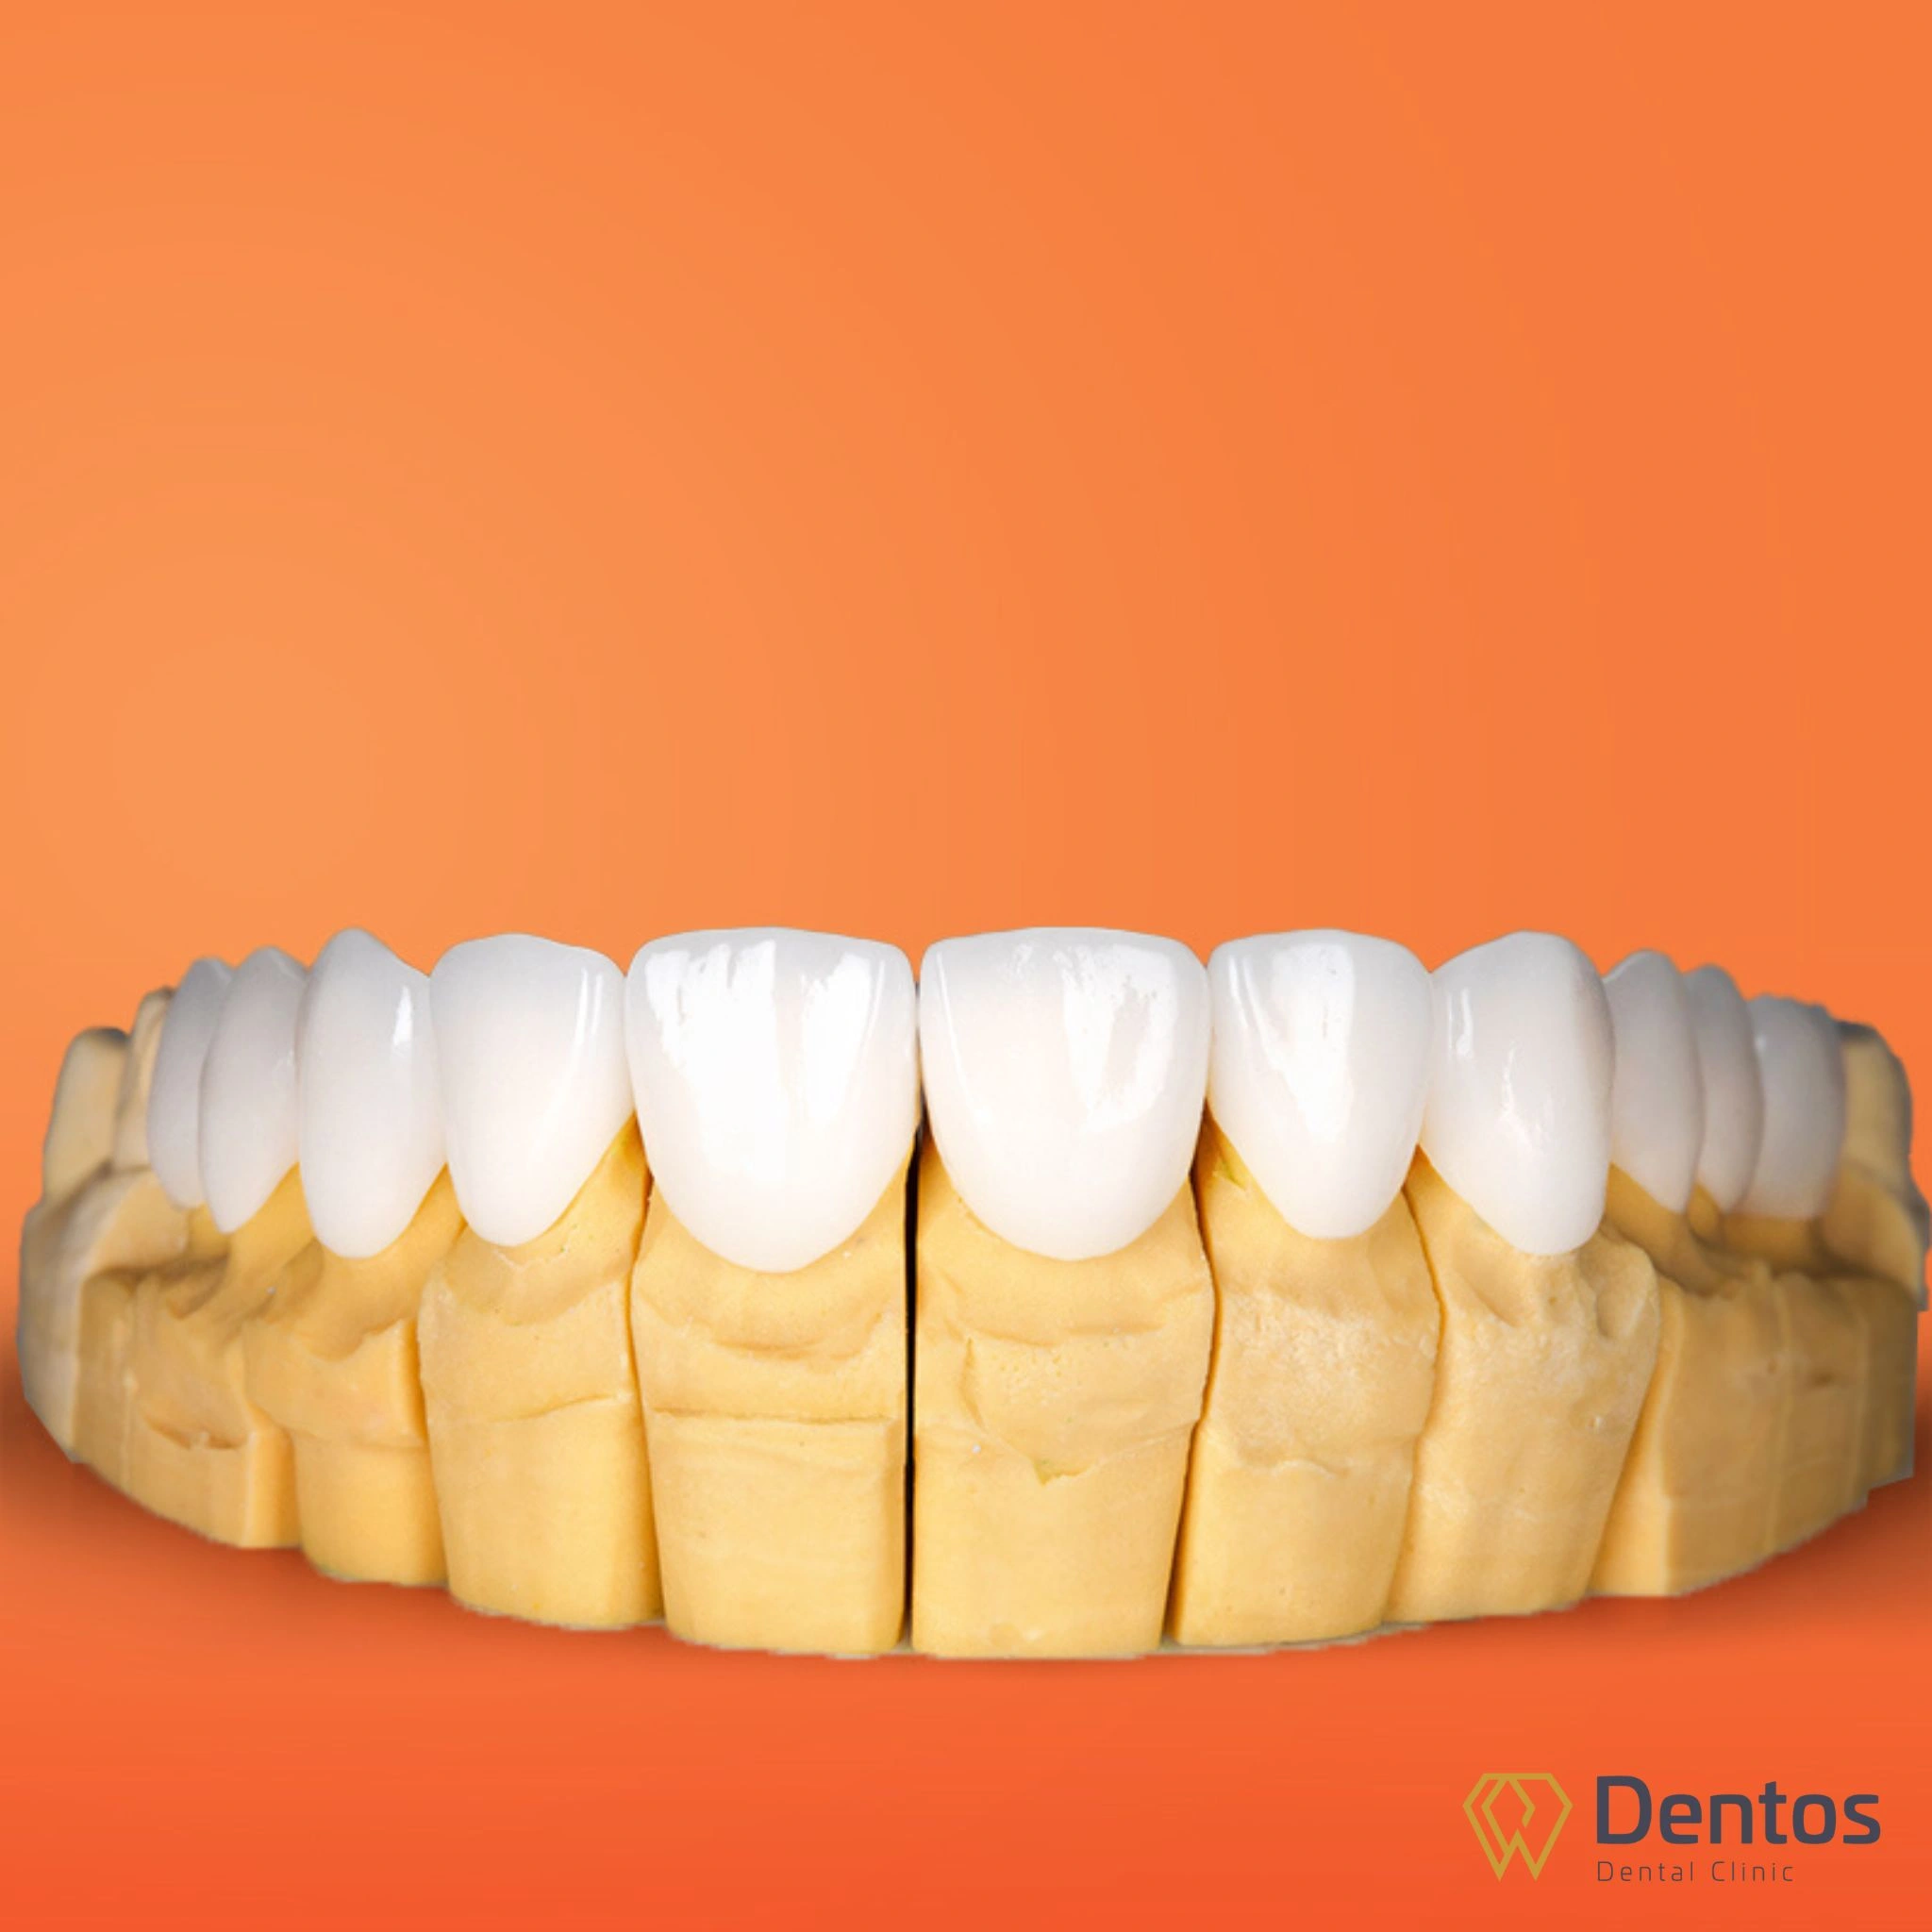 Răng toàn sứ Zirconia là dòng răng sứ thẩm mỹ cao cấp được nhập khẩu chính hãng từ Mỹ và Đức